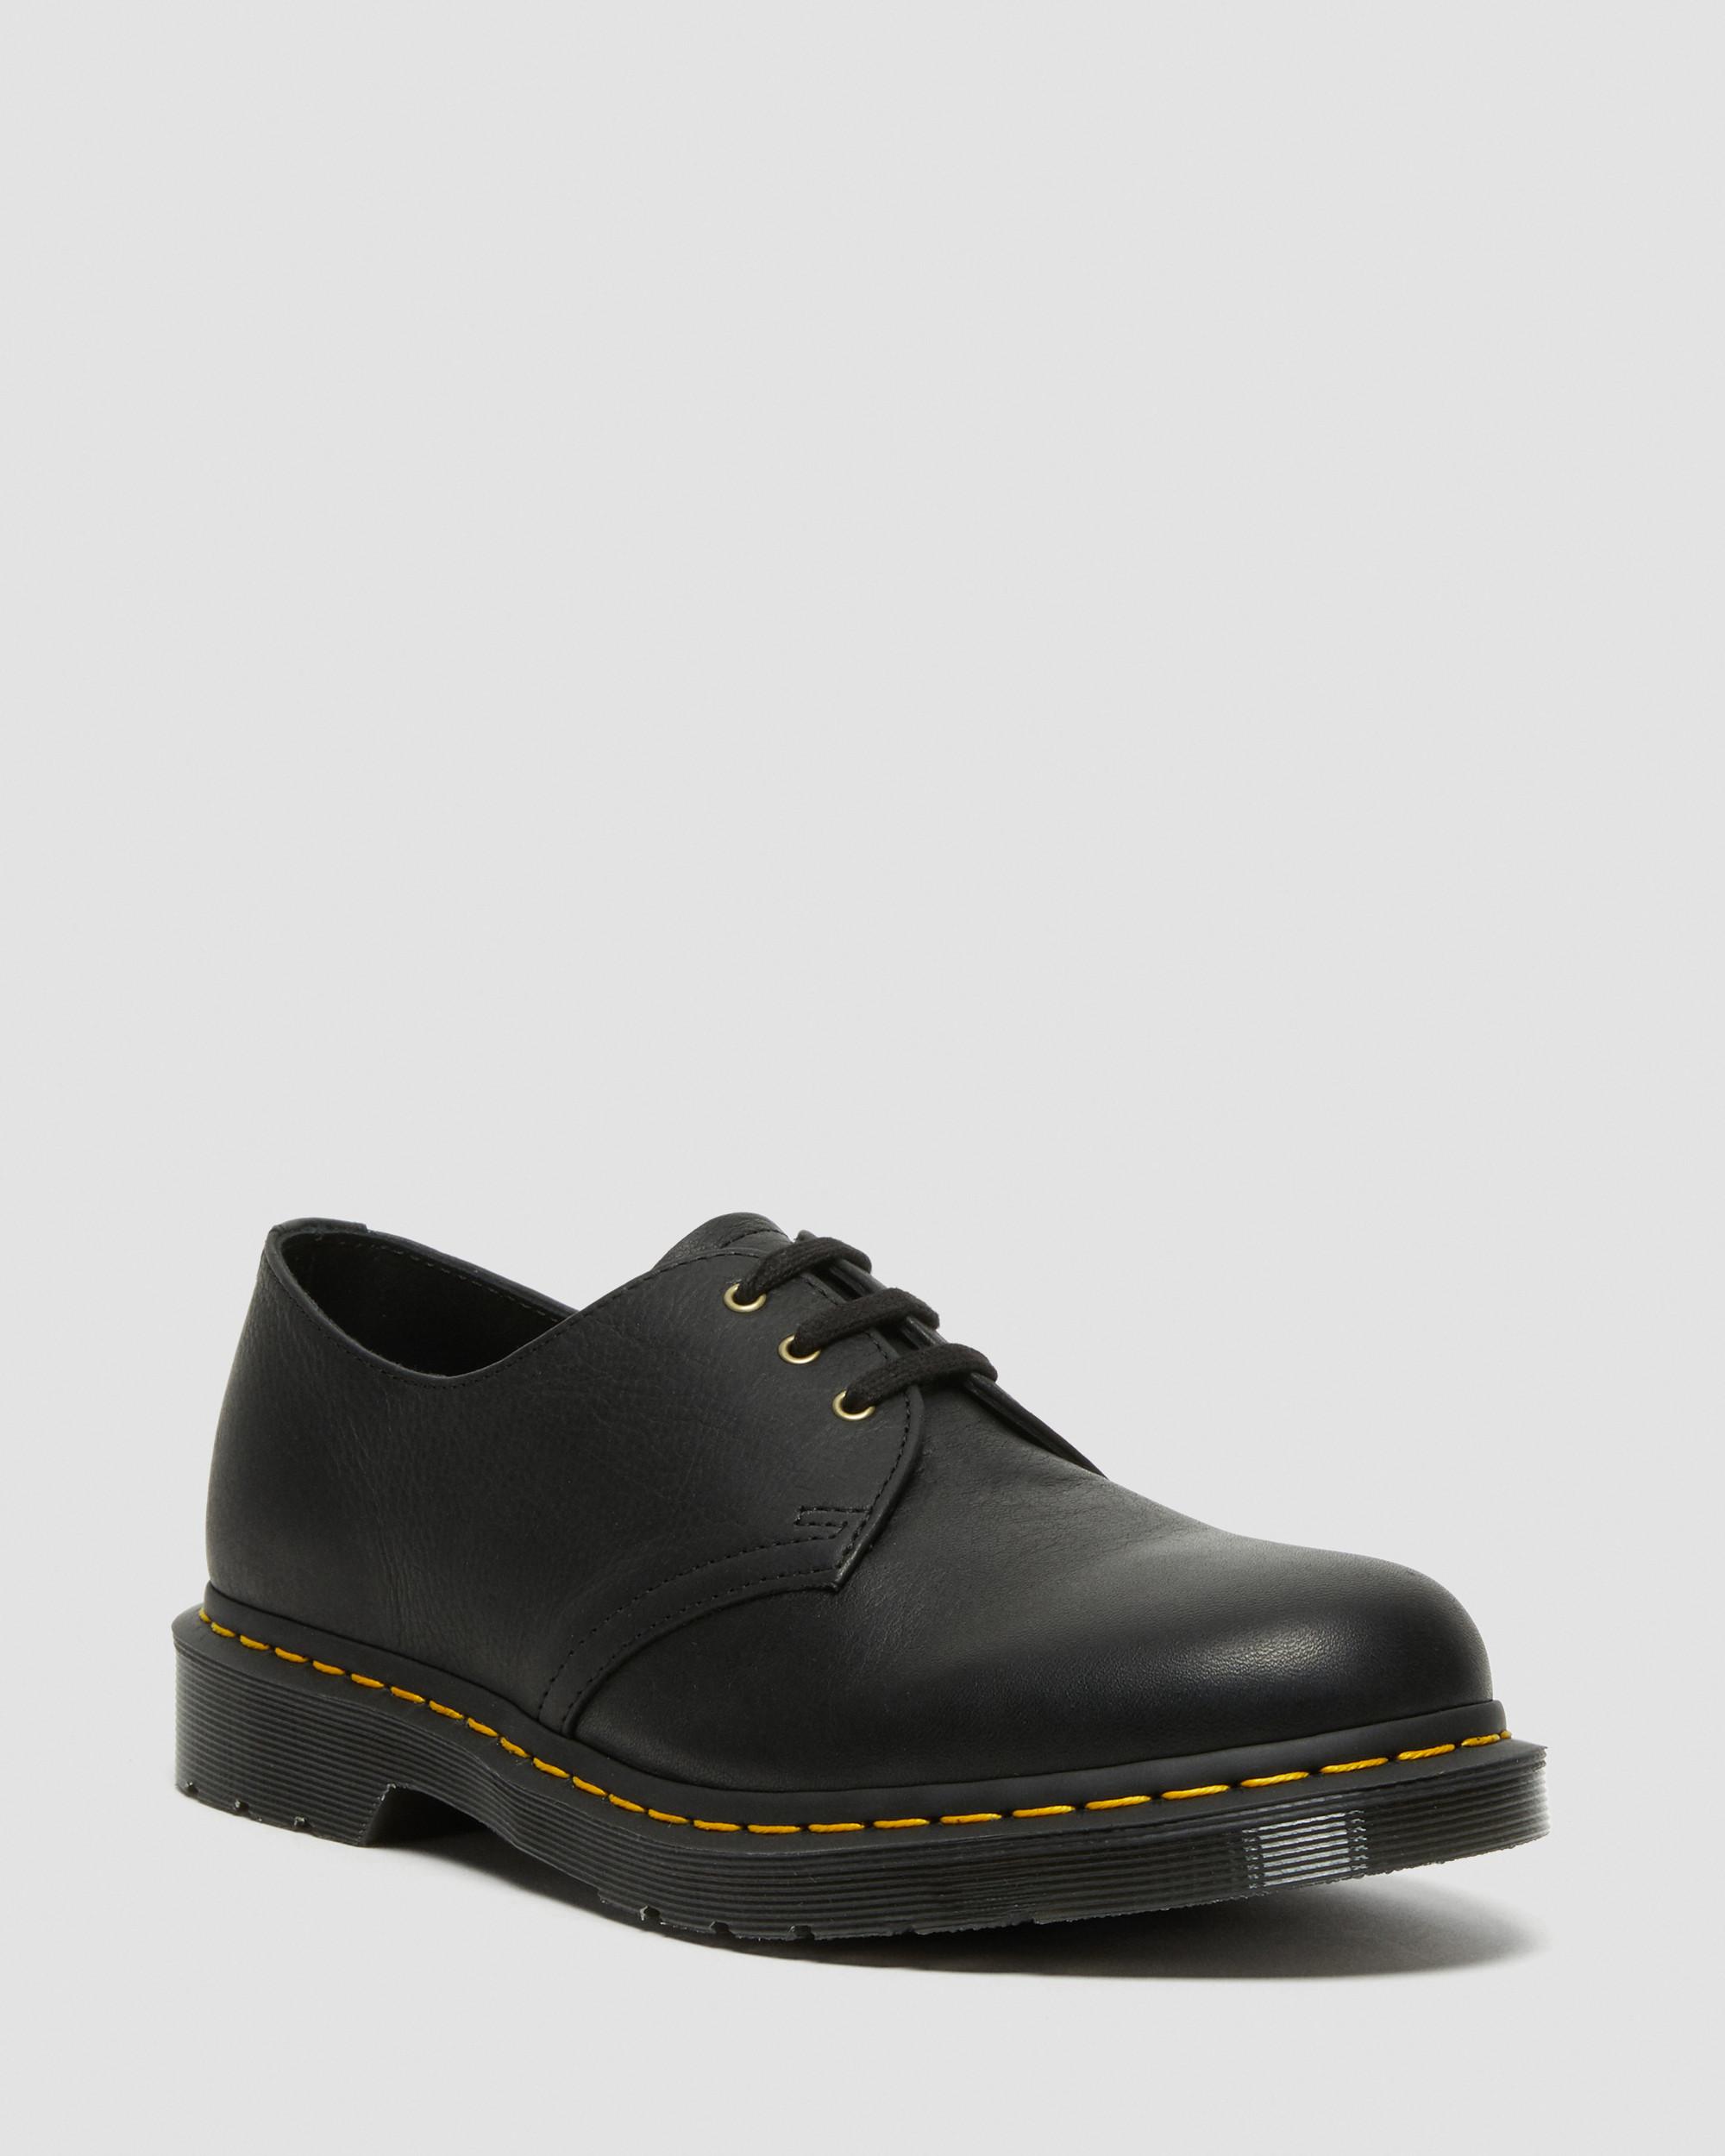 Boots, Shoes \u0026 Sandals | Dr. Martens 